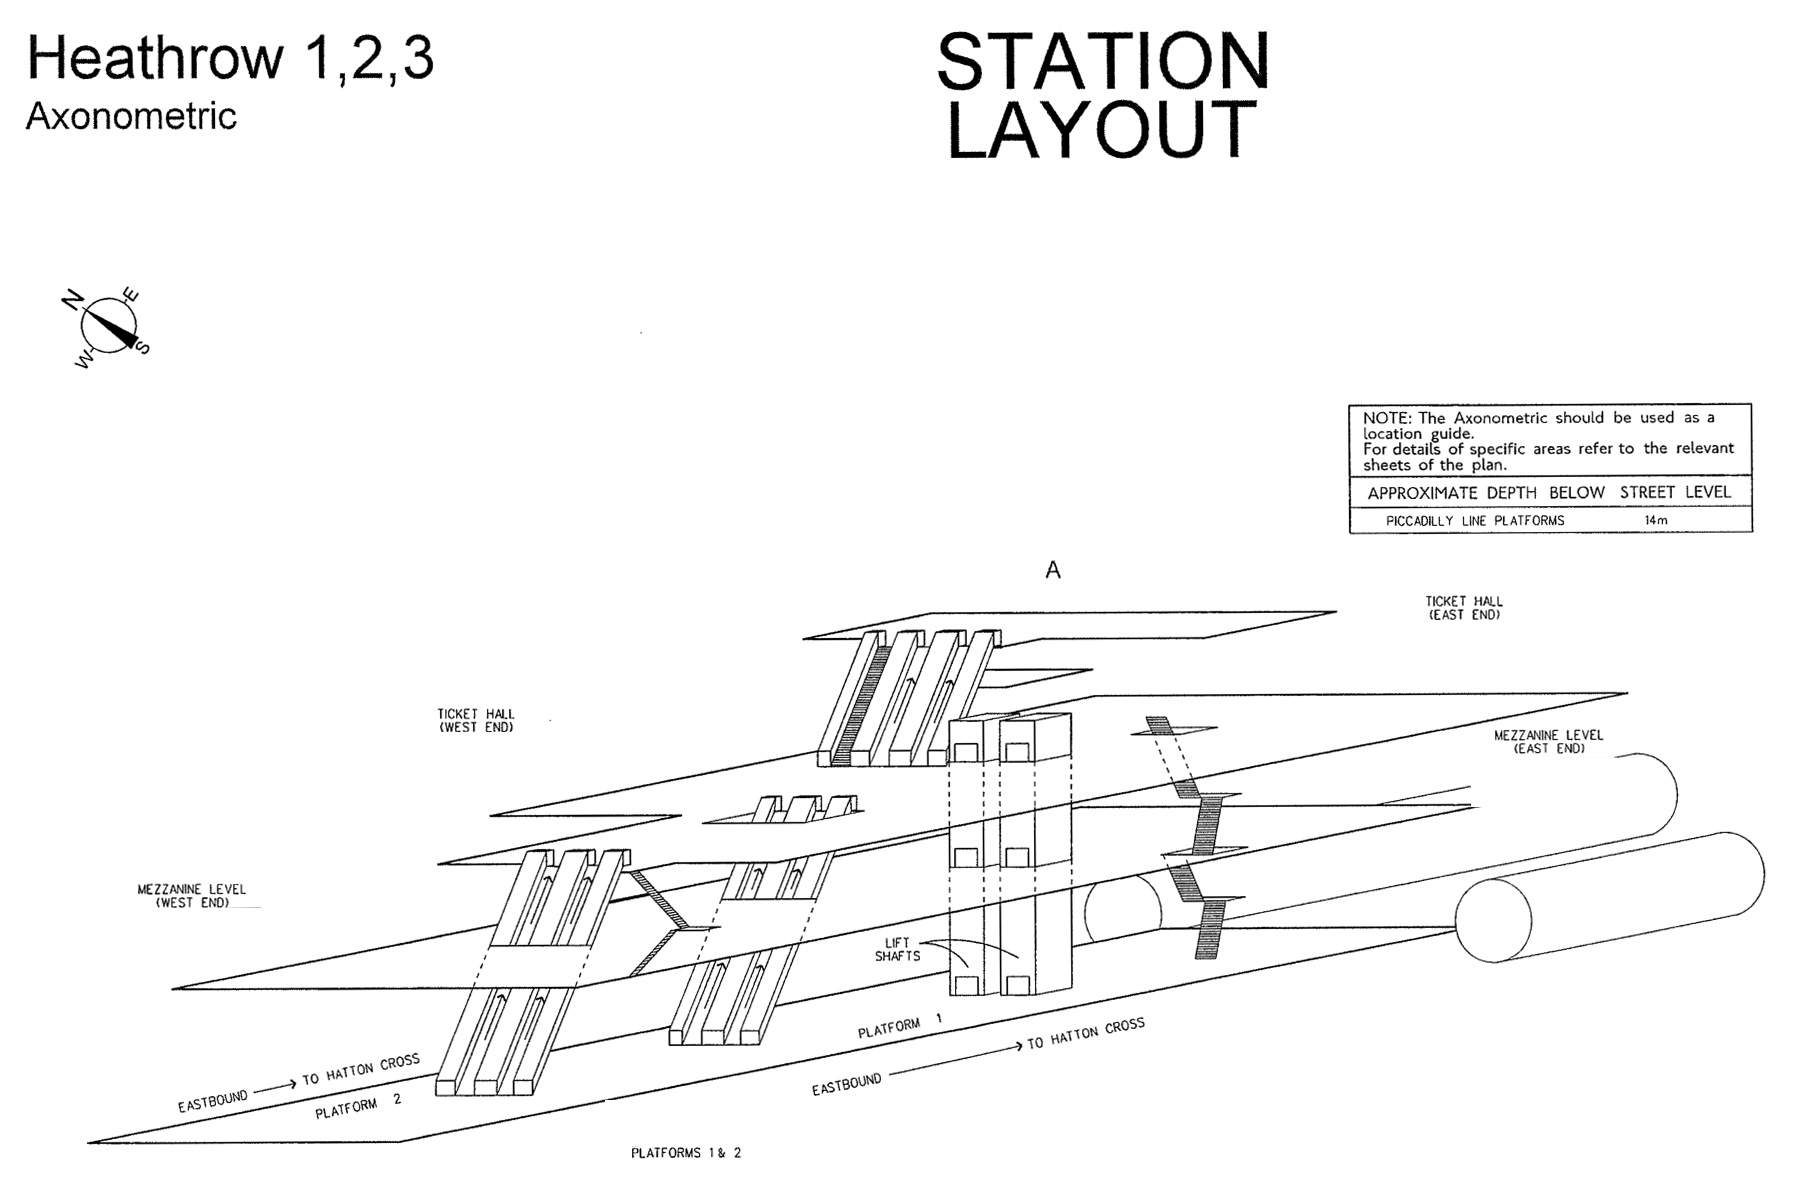 diagramme-3d-station-metro-londres-heathrow-123-08